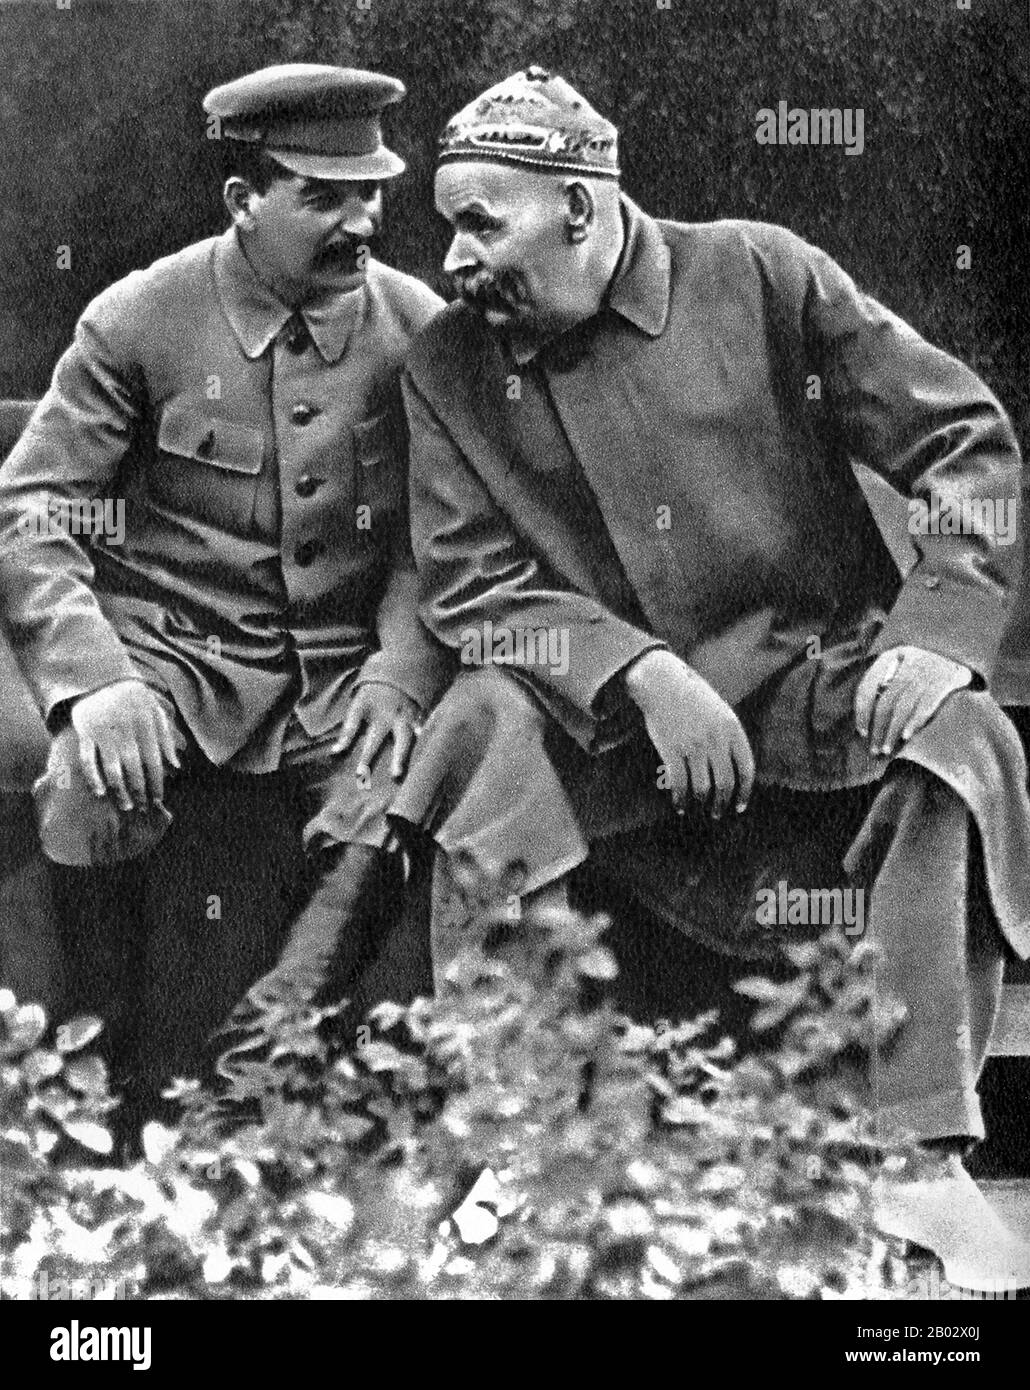 Joseph Vissarionovich Stalin (1878–1953) è stato il primo Segretario Generale del Partito Comunista del Comitato Centrale dell'Unione Sovietica dal 1922 alla sua morte nel 1953. Mentre formalmente l'ufficio del Segretario Generale era elettivo e non era inizialmente considerato come la posizione di vertice nello stato sovietico, dopo la morte di Vladimir Lenin nel 1924, Stalin riuscì a consolidare sempre più potere nelle sue mani, mettendo gradualmente tutti i gruppi di opposizione all'interno del partito. Alexei Maximovich Peshkov (1868-1936), conosciuto principalmente come Maxiligskov (Goky), è stato uno scrittore russo e sovietico, fondatore della S Foto Stock